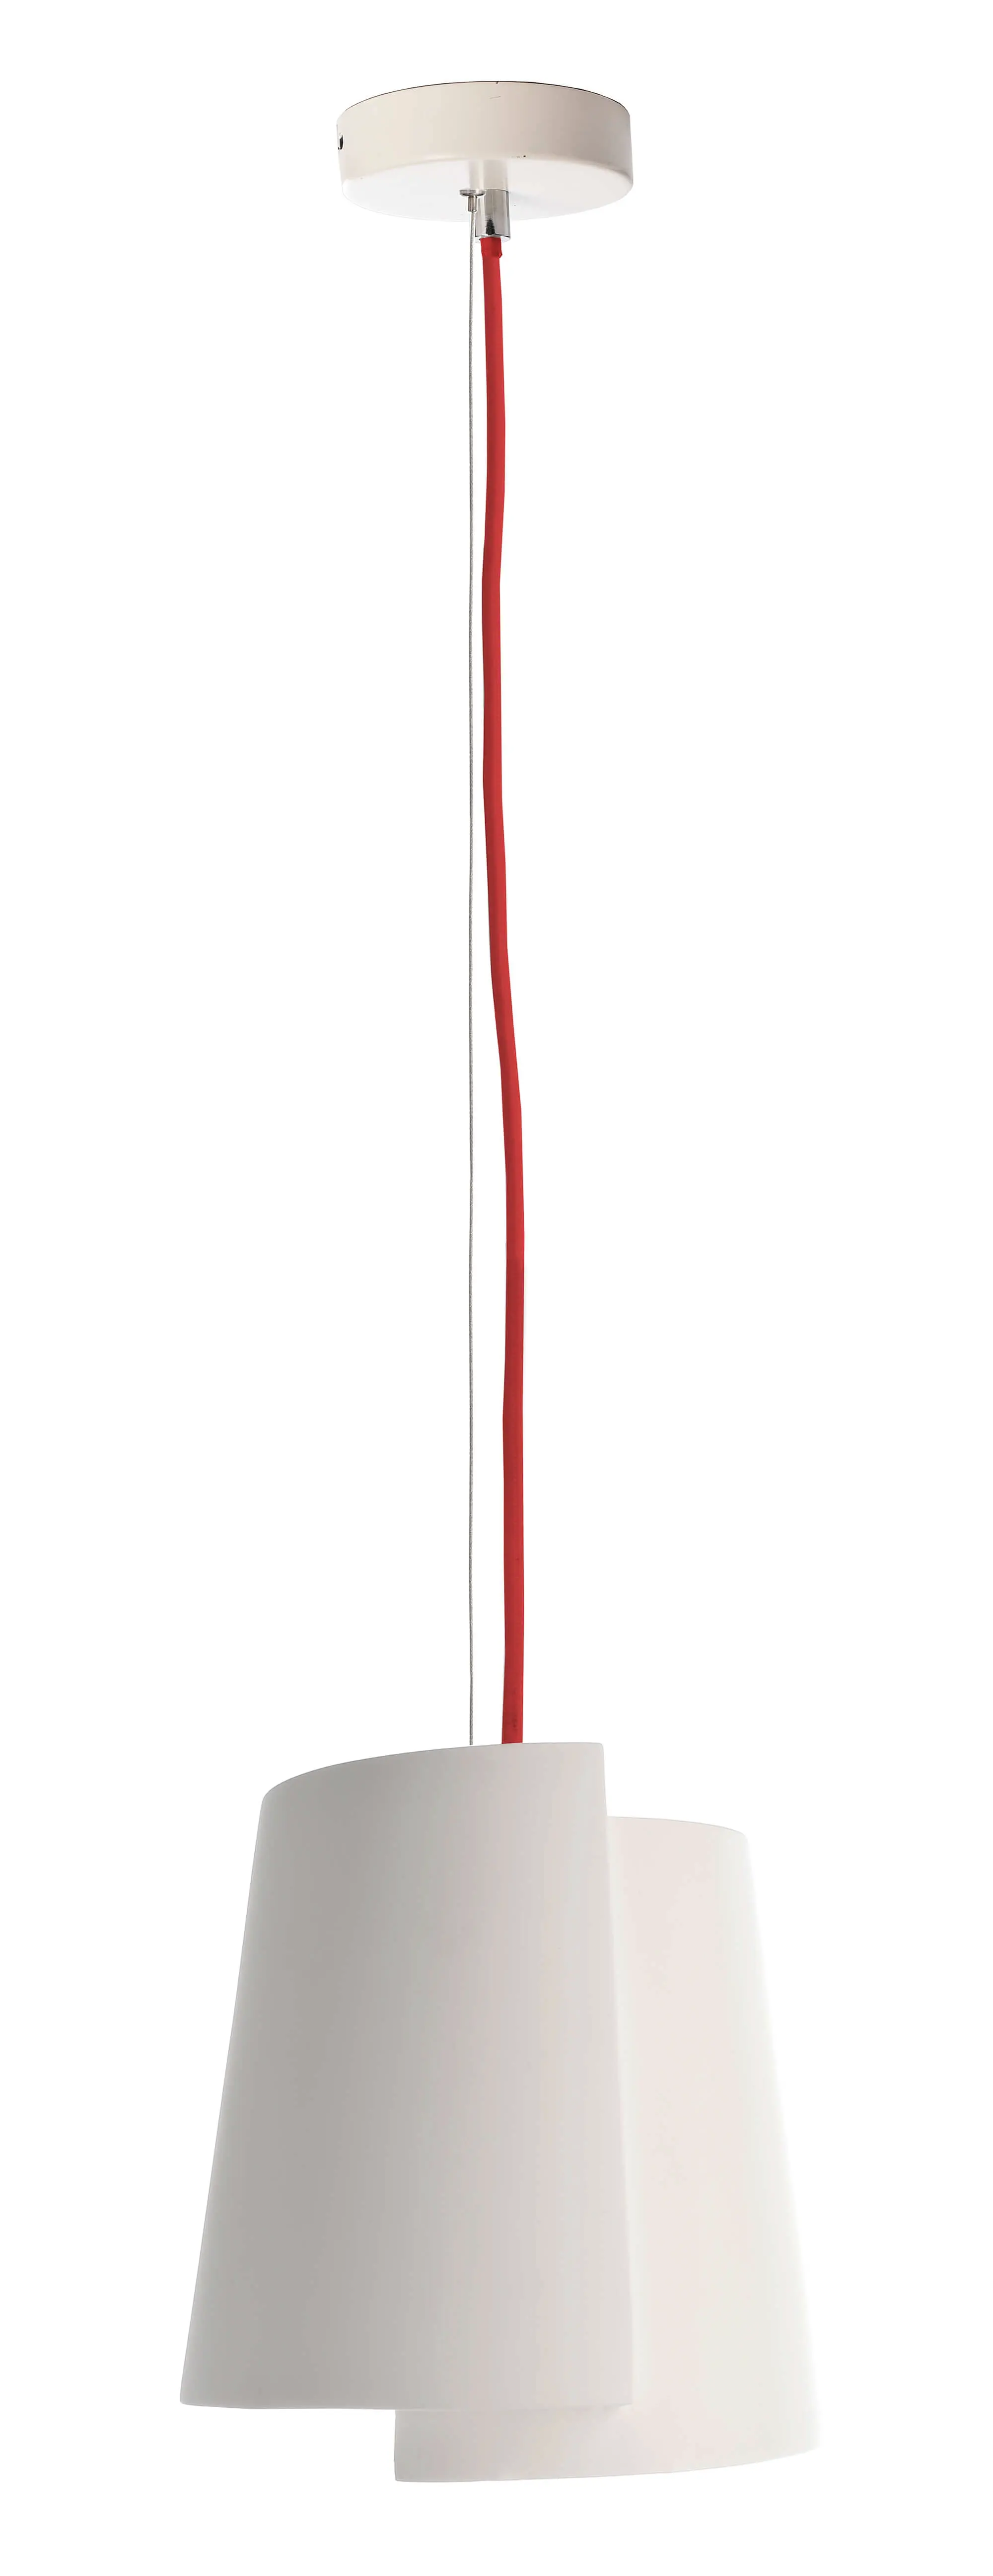 Hängeleuchte Twister I aus Gips, weiß, rotes Kabel, Ø 18cm